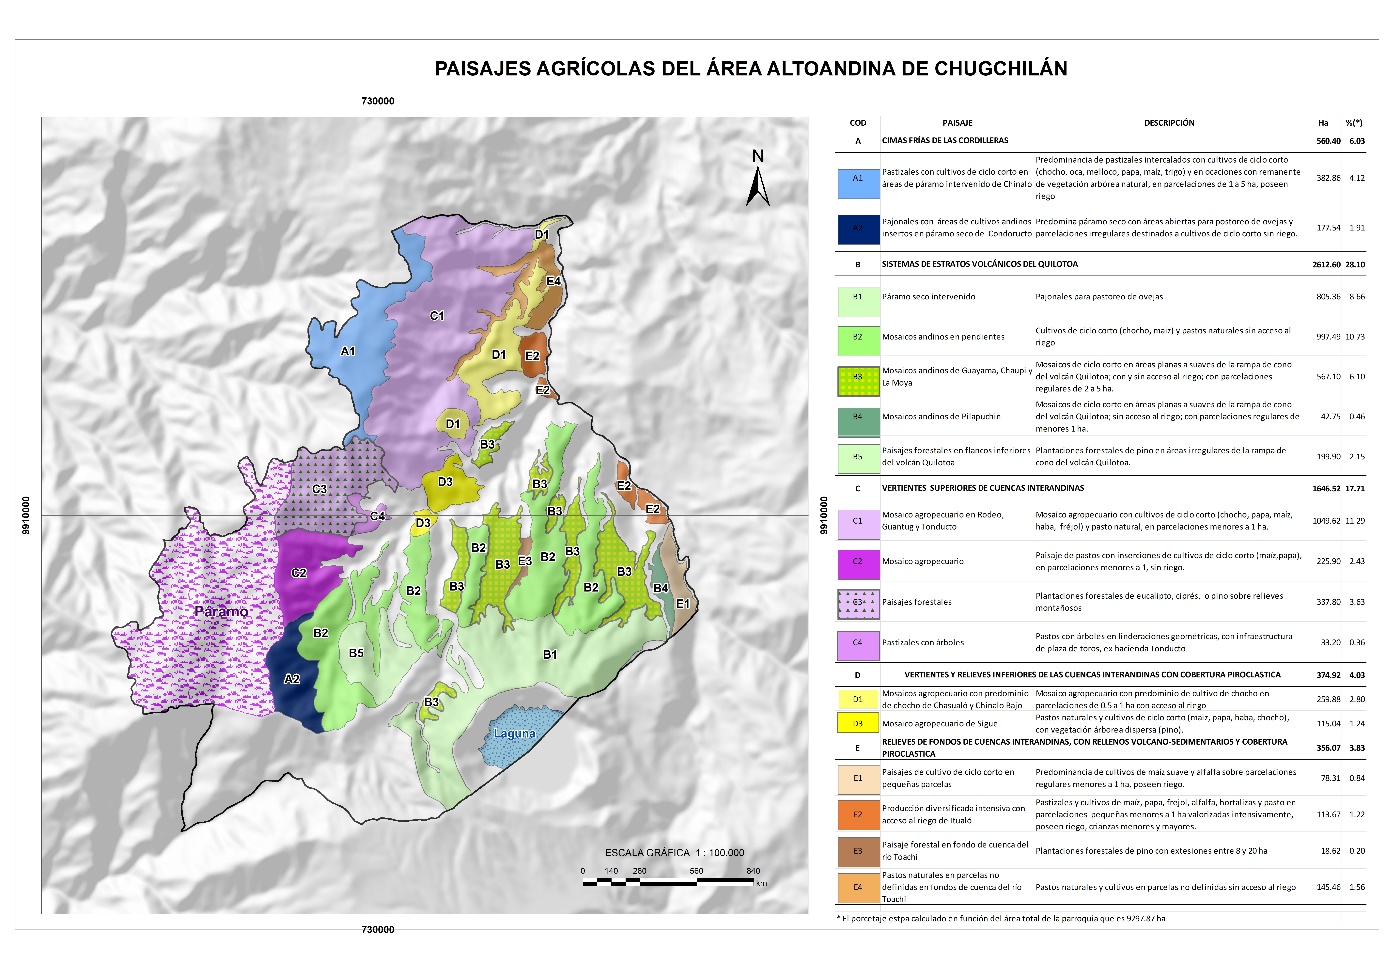 Agroecosistemas y paisajes agrarios de la zona alto-andina de Chugchilán.